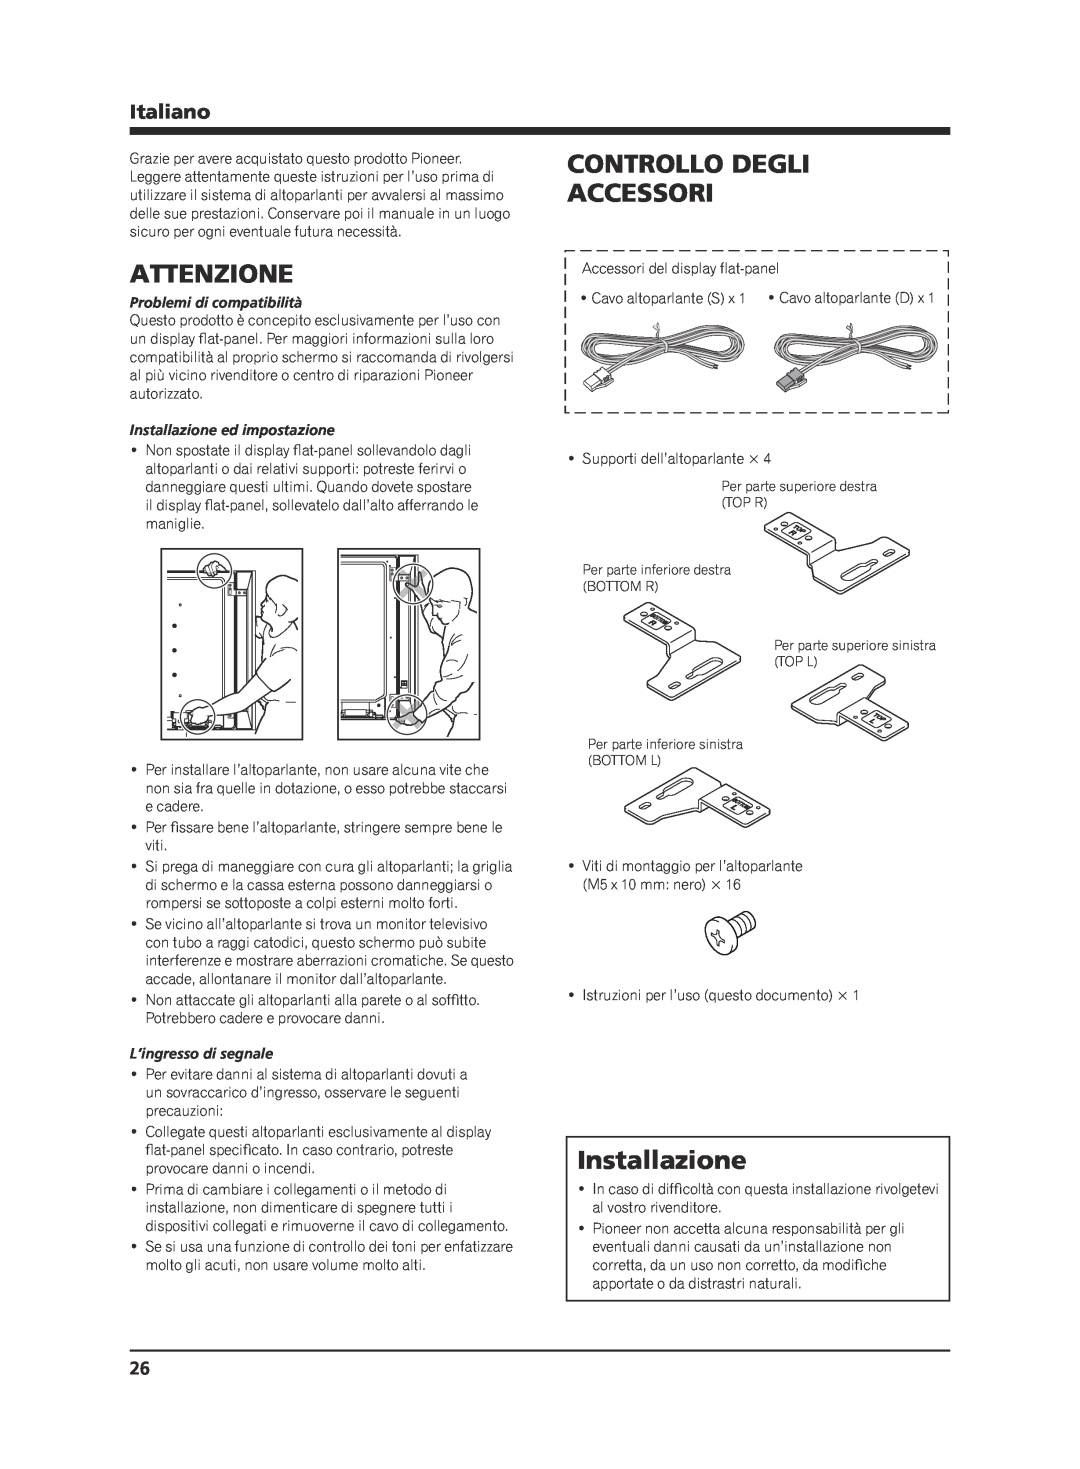 Pioneer KRP-S02 manual Attenzione, Controllo Degli Accessori, Installazione, Italiano, Problemi di compatibilità 